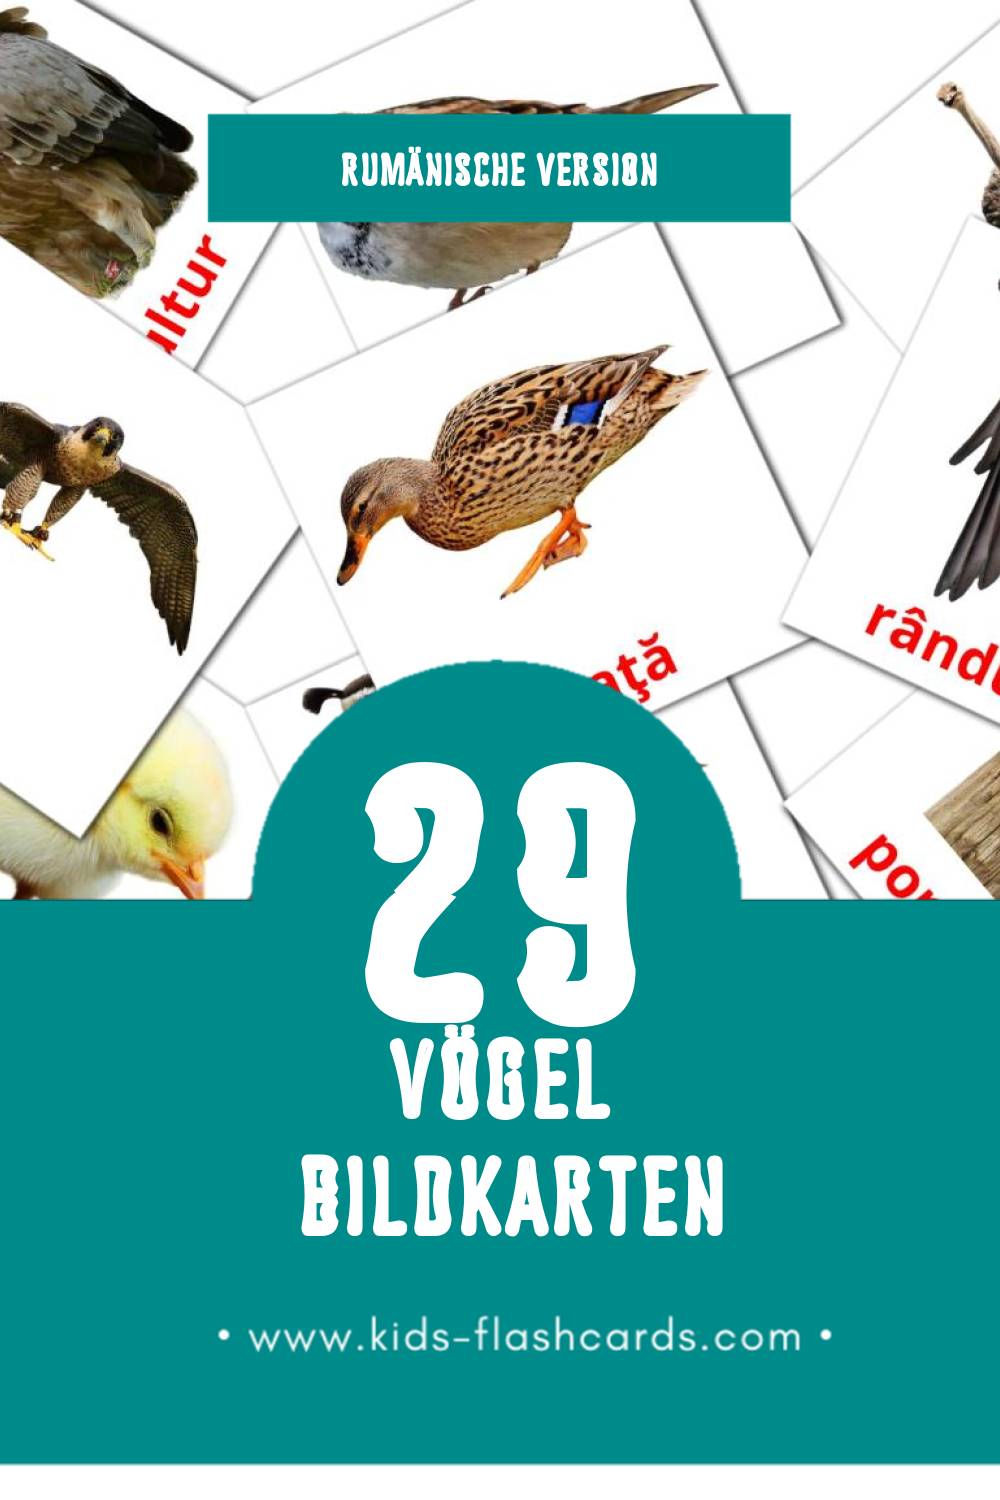 Visual Păsări Flashcards für Kleinkinder (29 Karten in Rumänisch)